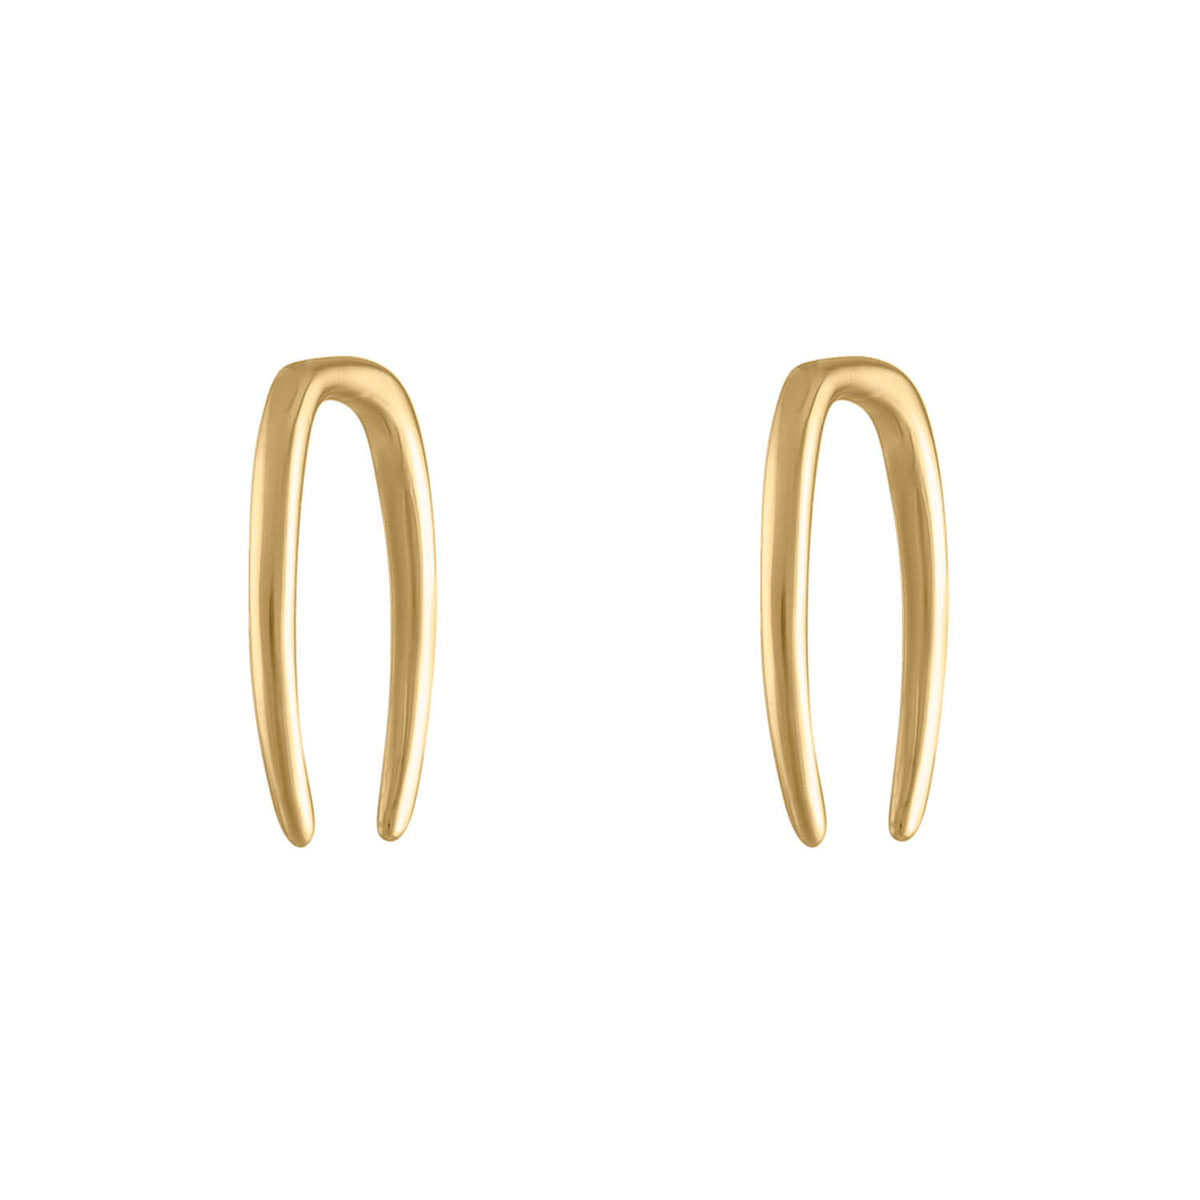 Whisper Open Hoop Earrings in 14k Gold - 18G | Maison Miru